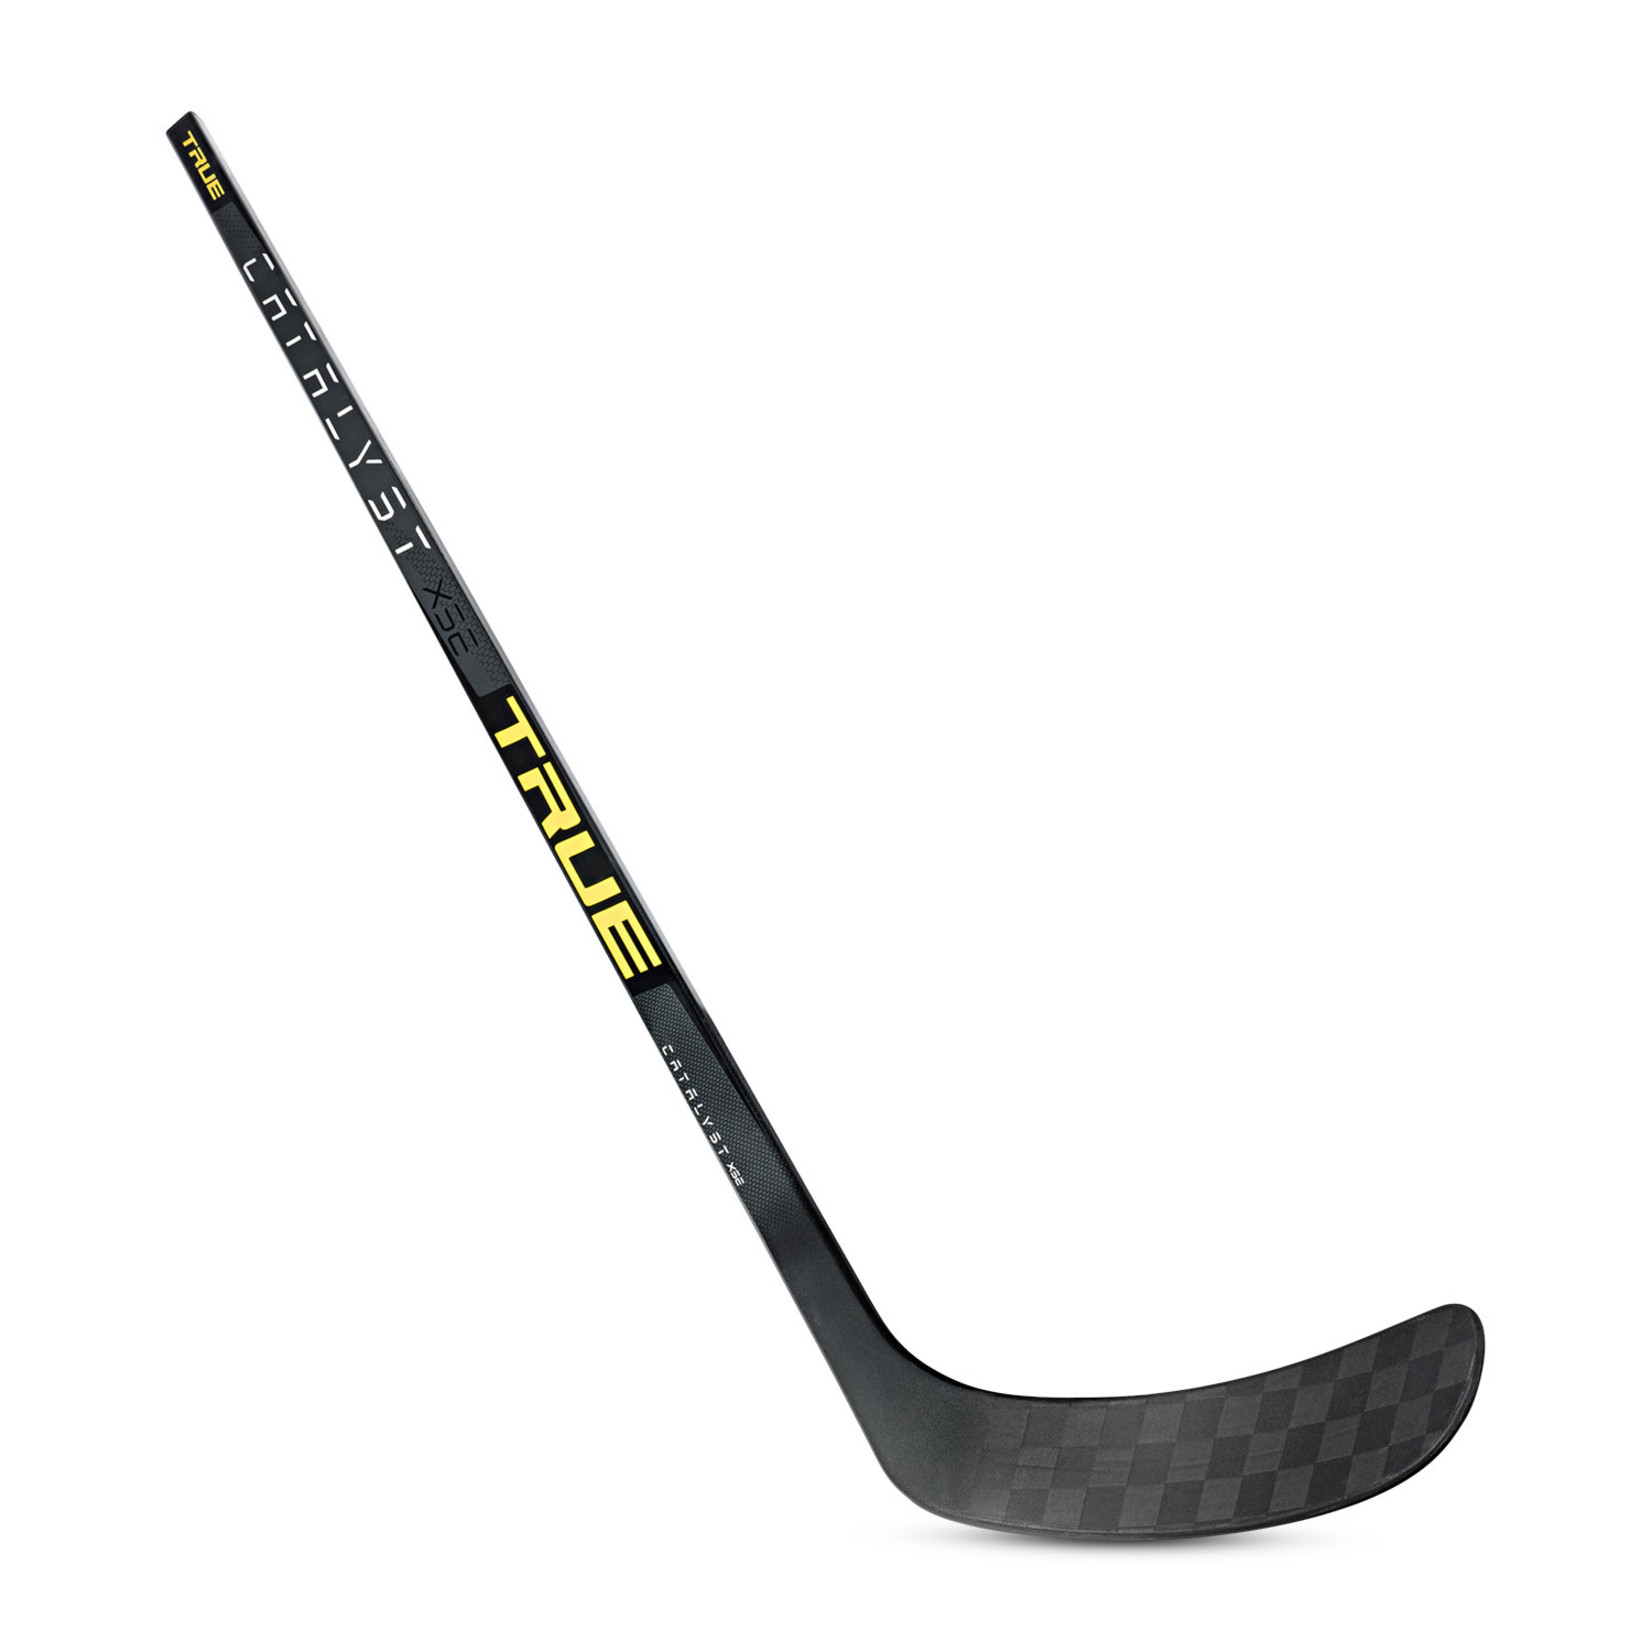 True Hockey True Hockey Stick, Catalyst XSE, Junior